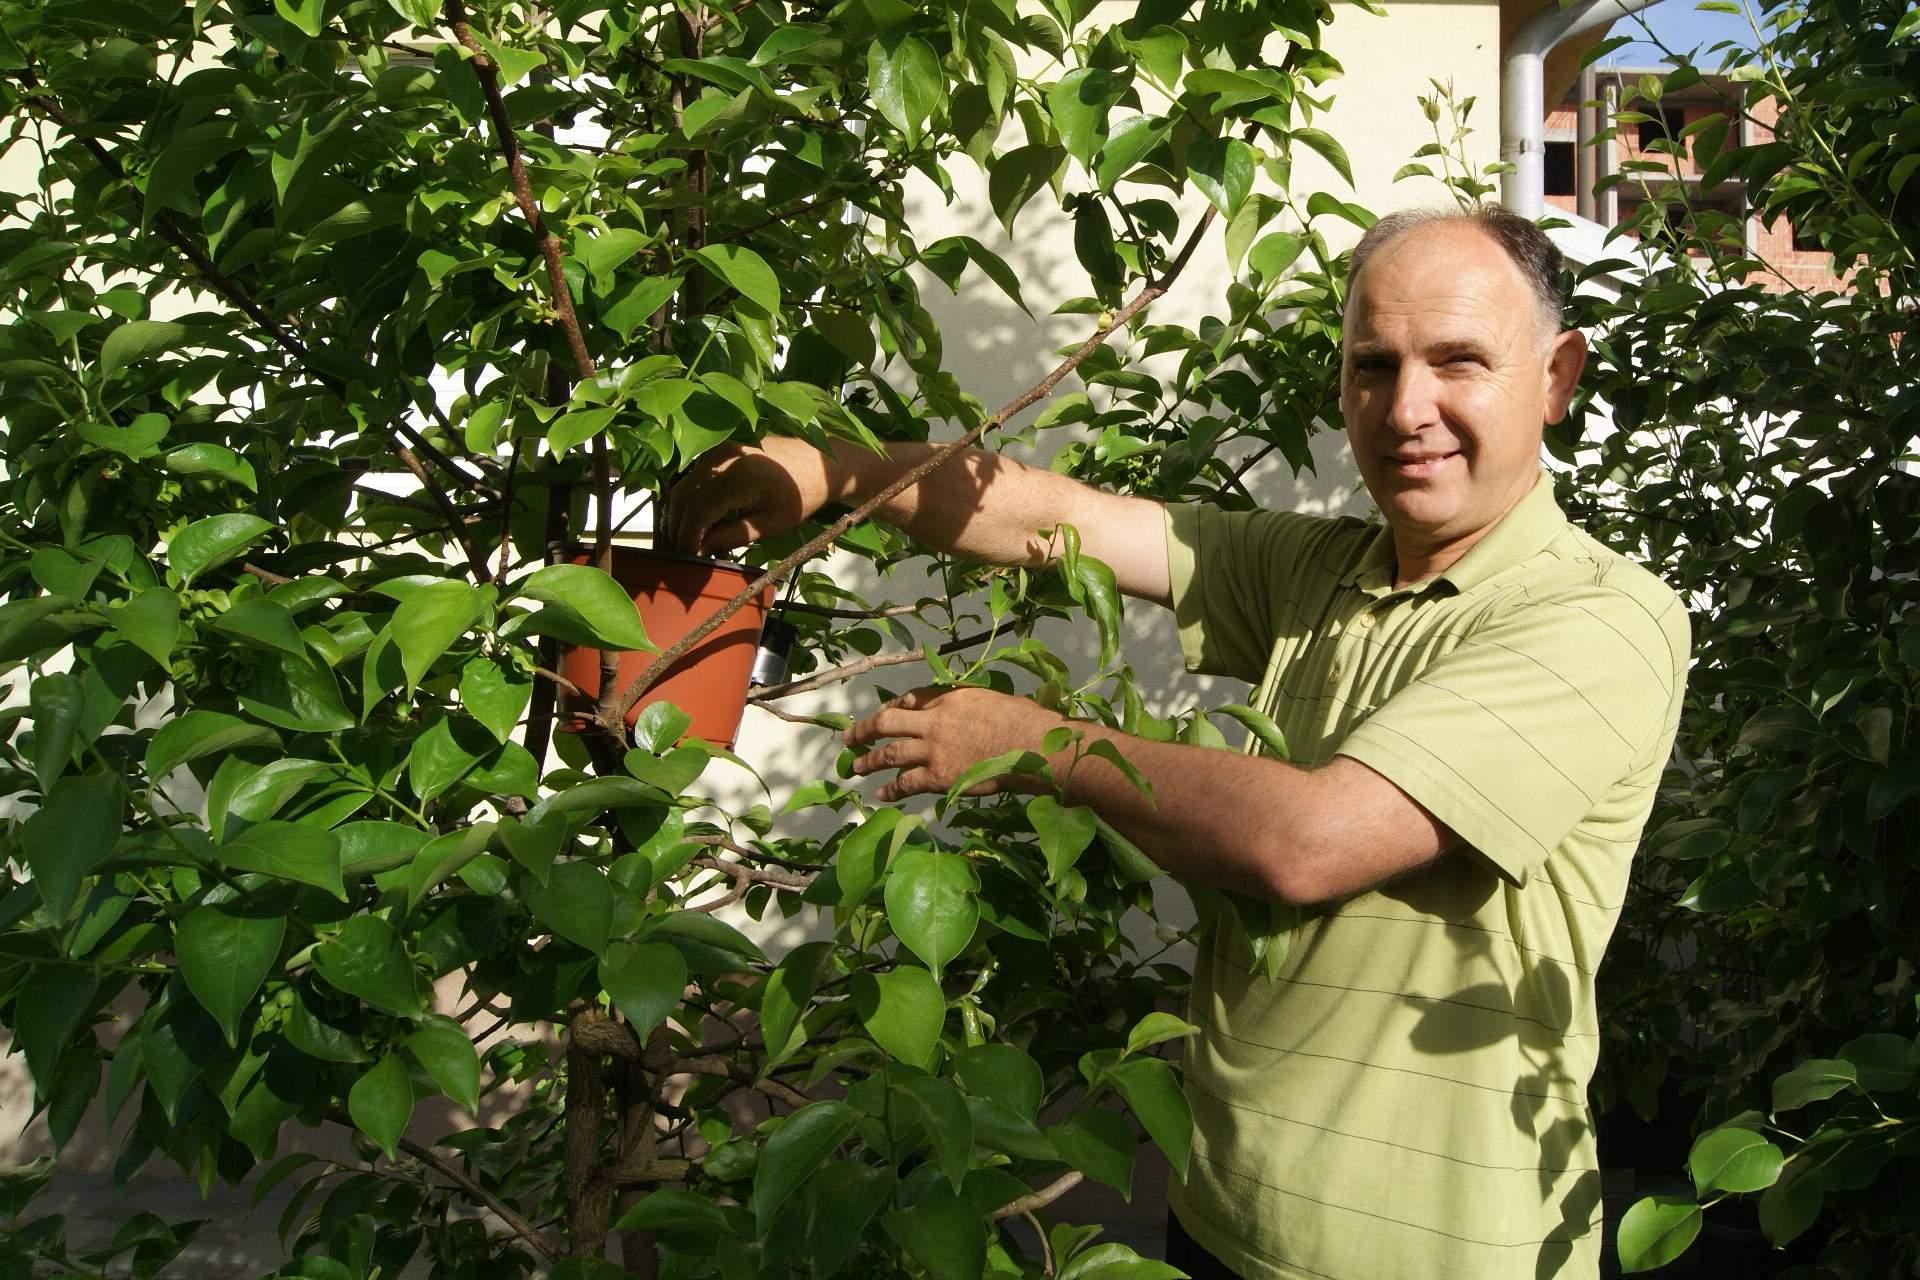 Stabla autohtonih voćki od izumiranja spašava - kloniranjem